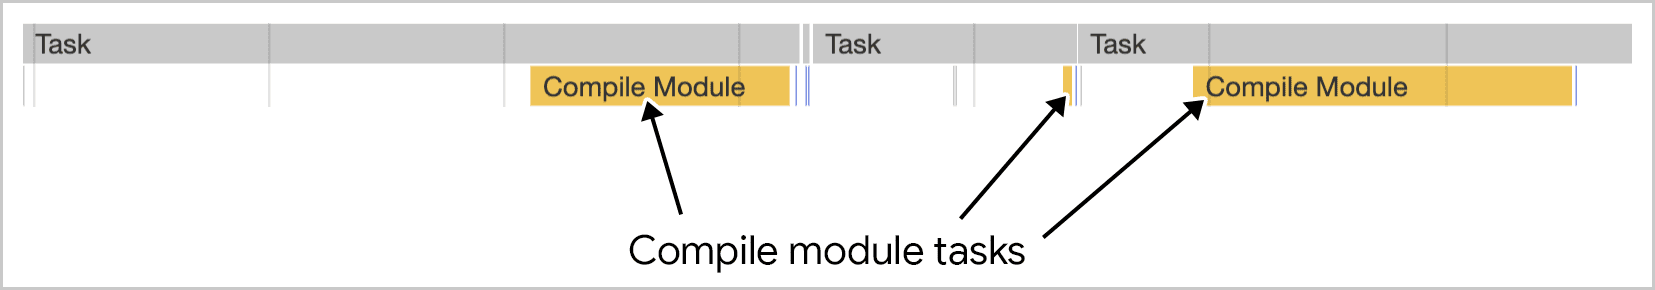 Die Modulkompilierung kann in mehreren Aufgaben ausgeführt werden, wie in den Chrome-Entwicklertools dargestellt.